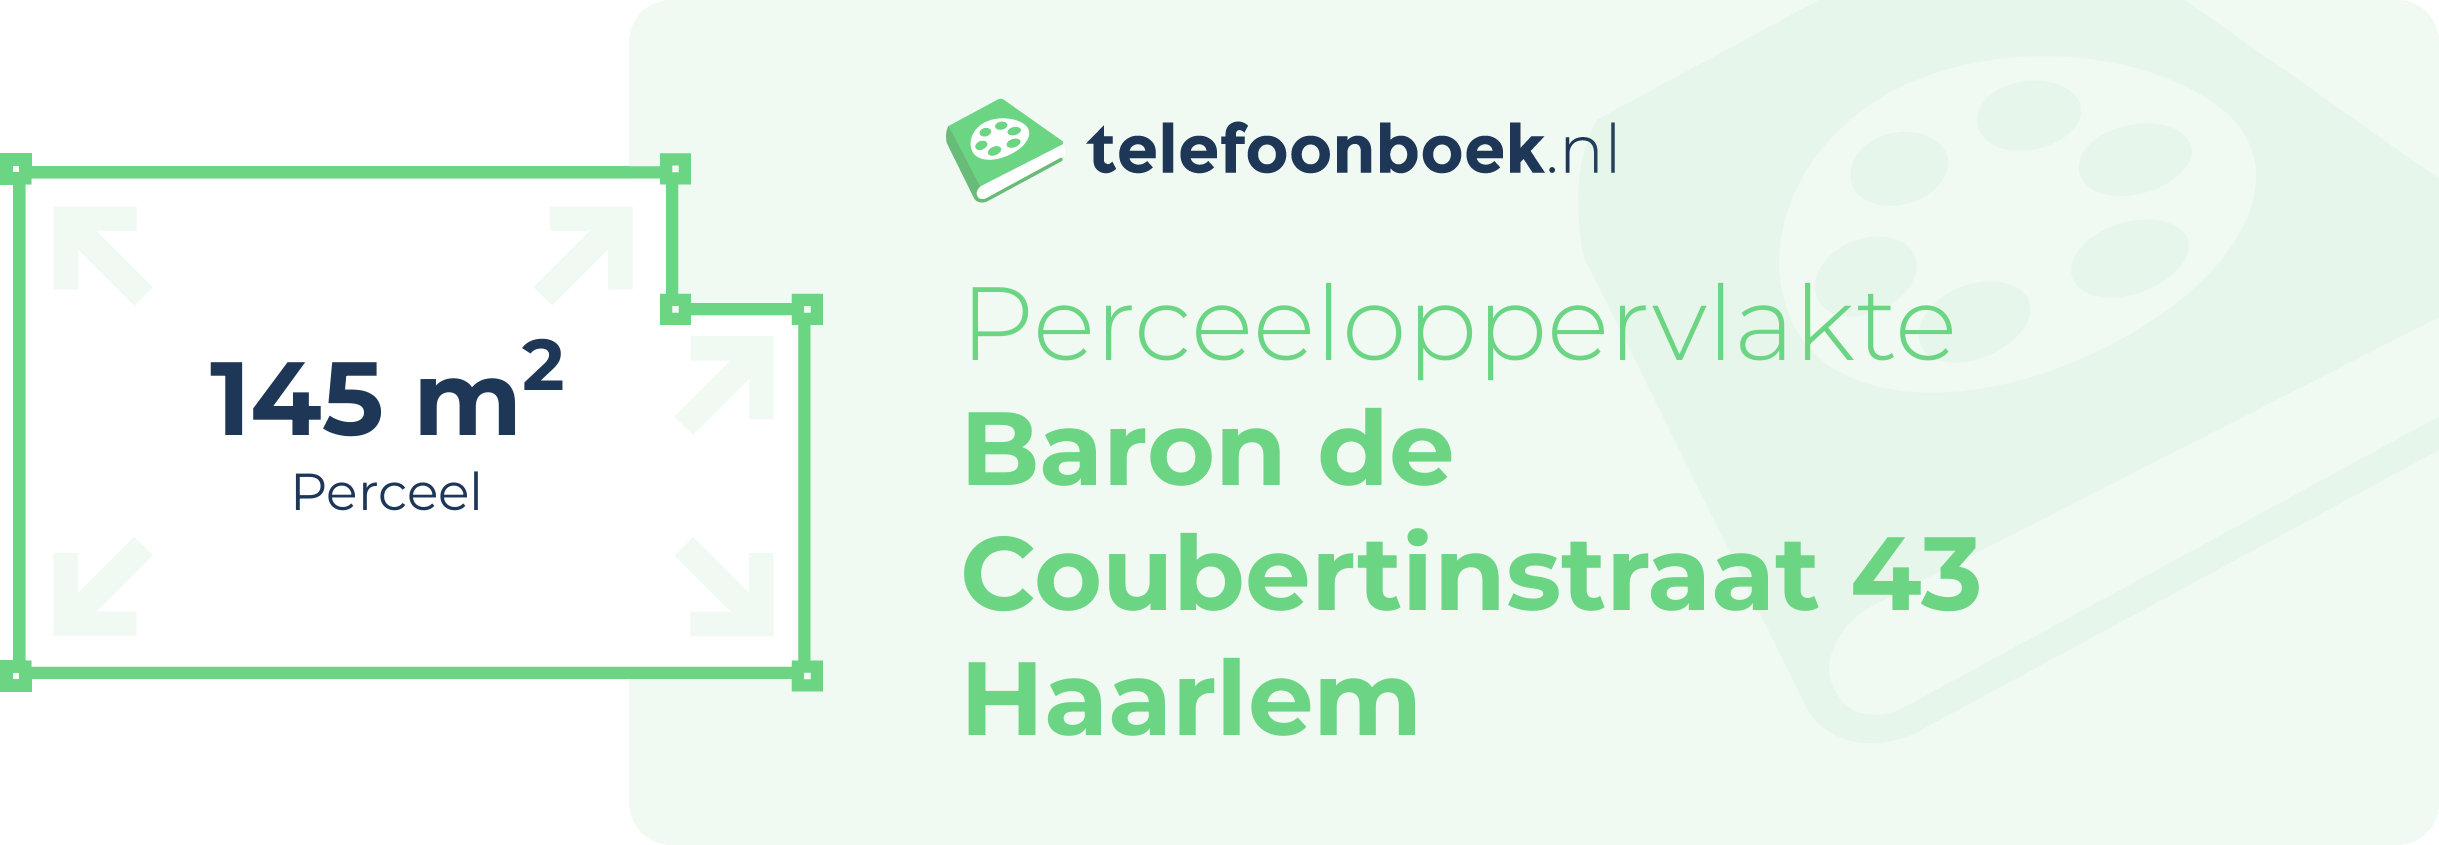 Perceeloppervlakte Baron De Coubertinstraat 43 Haarlem